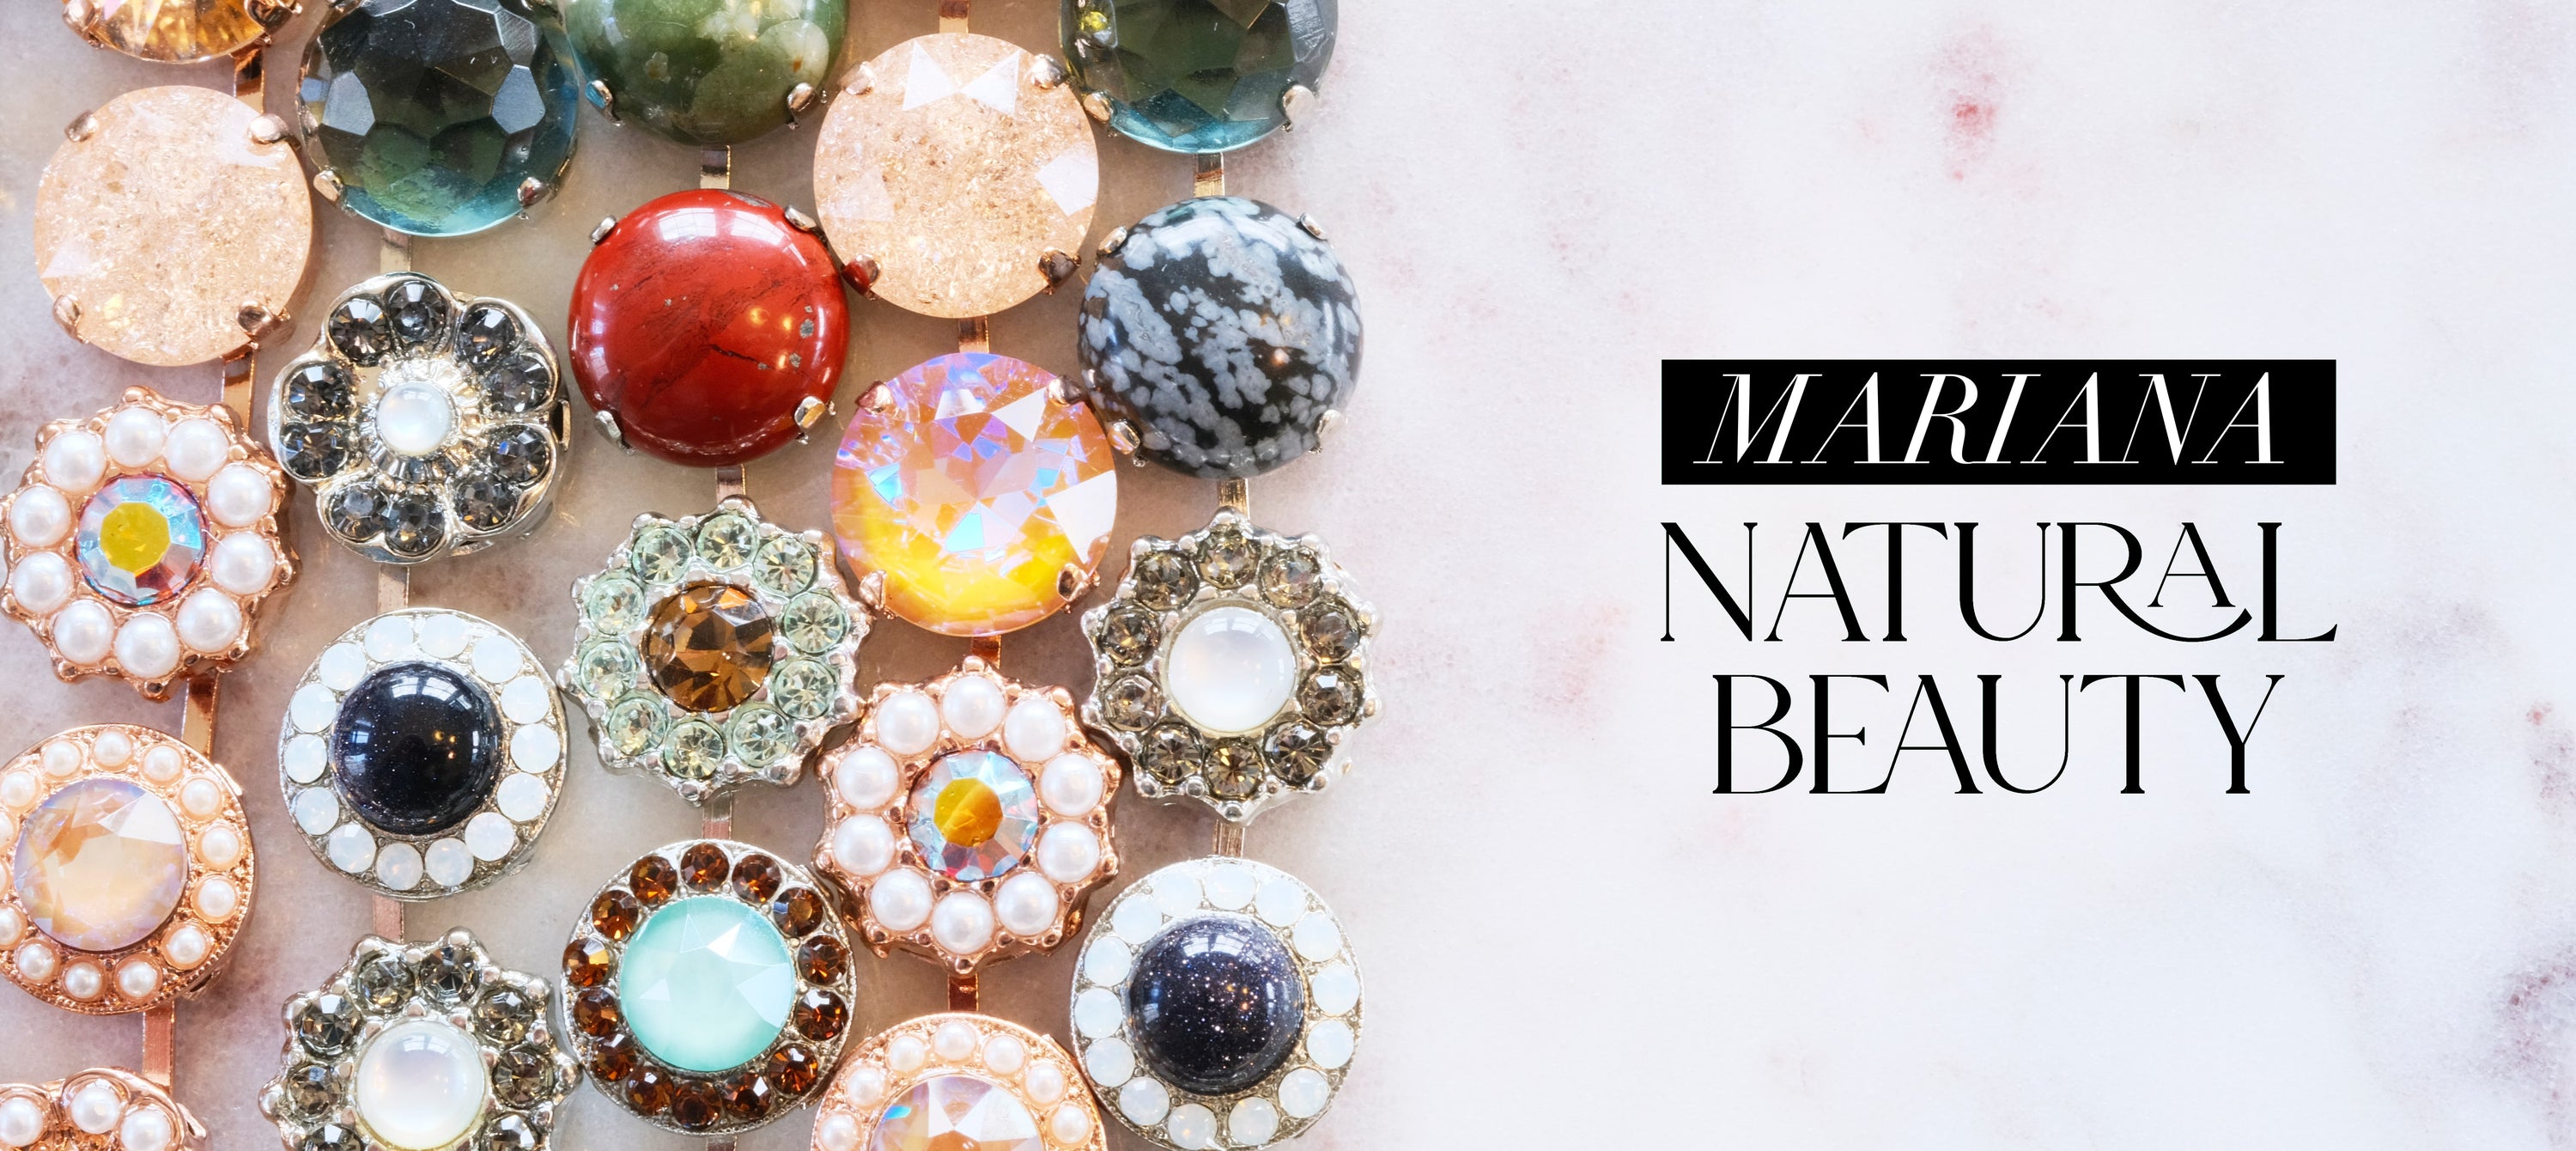 mariana jewelry natural beauty